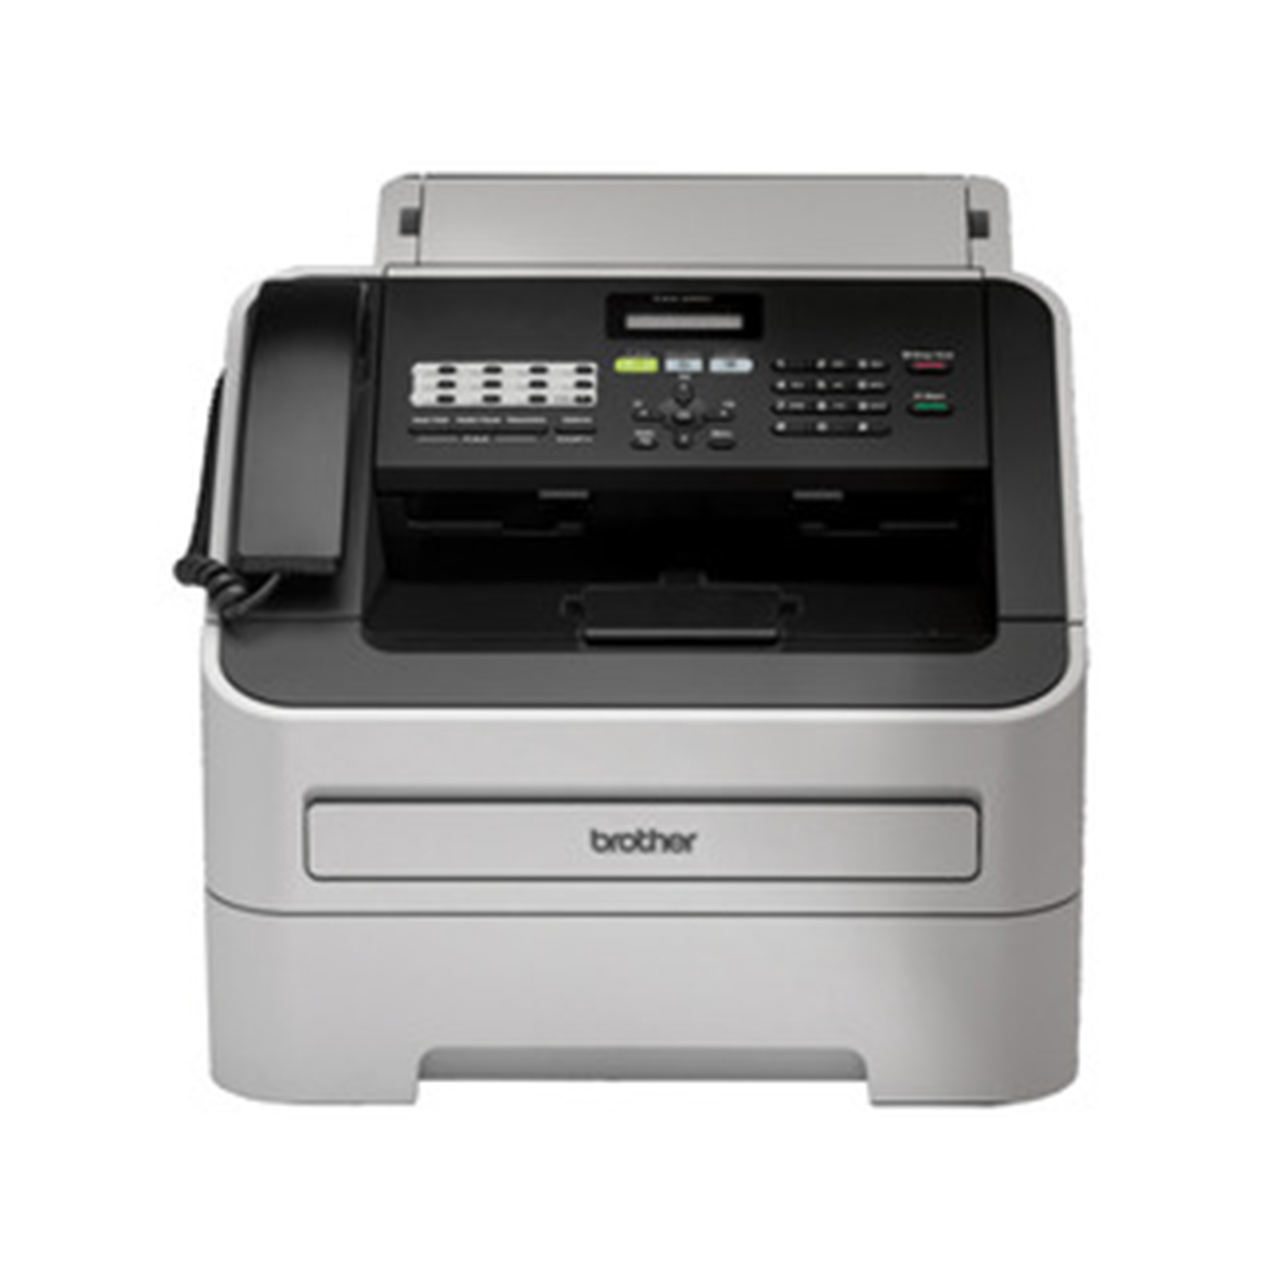 FAX-2950 Fax Machine